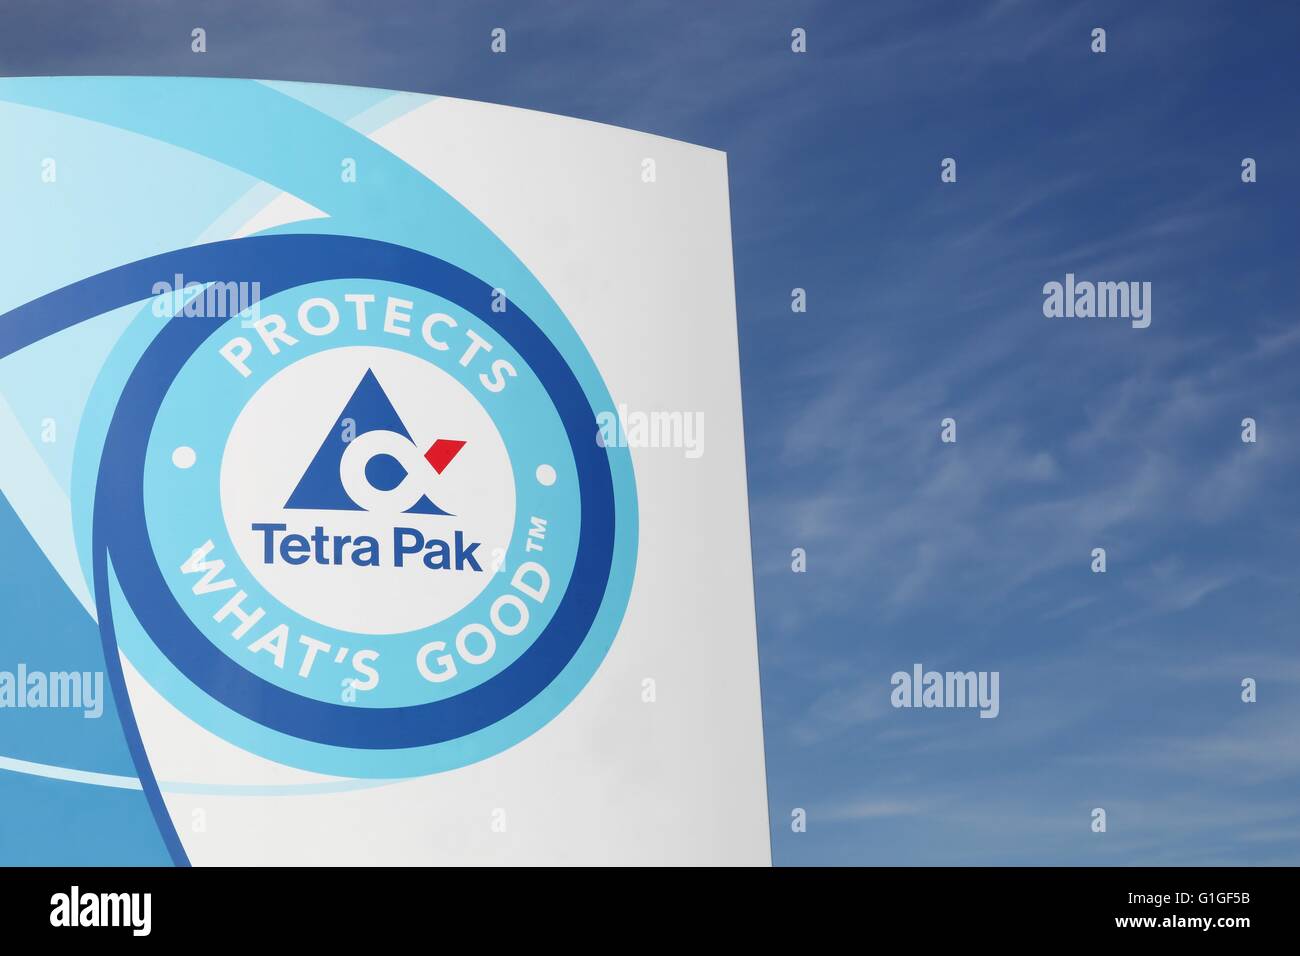 Tetra pak logo hi-res stock photography and images - Alamy